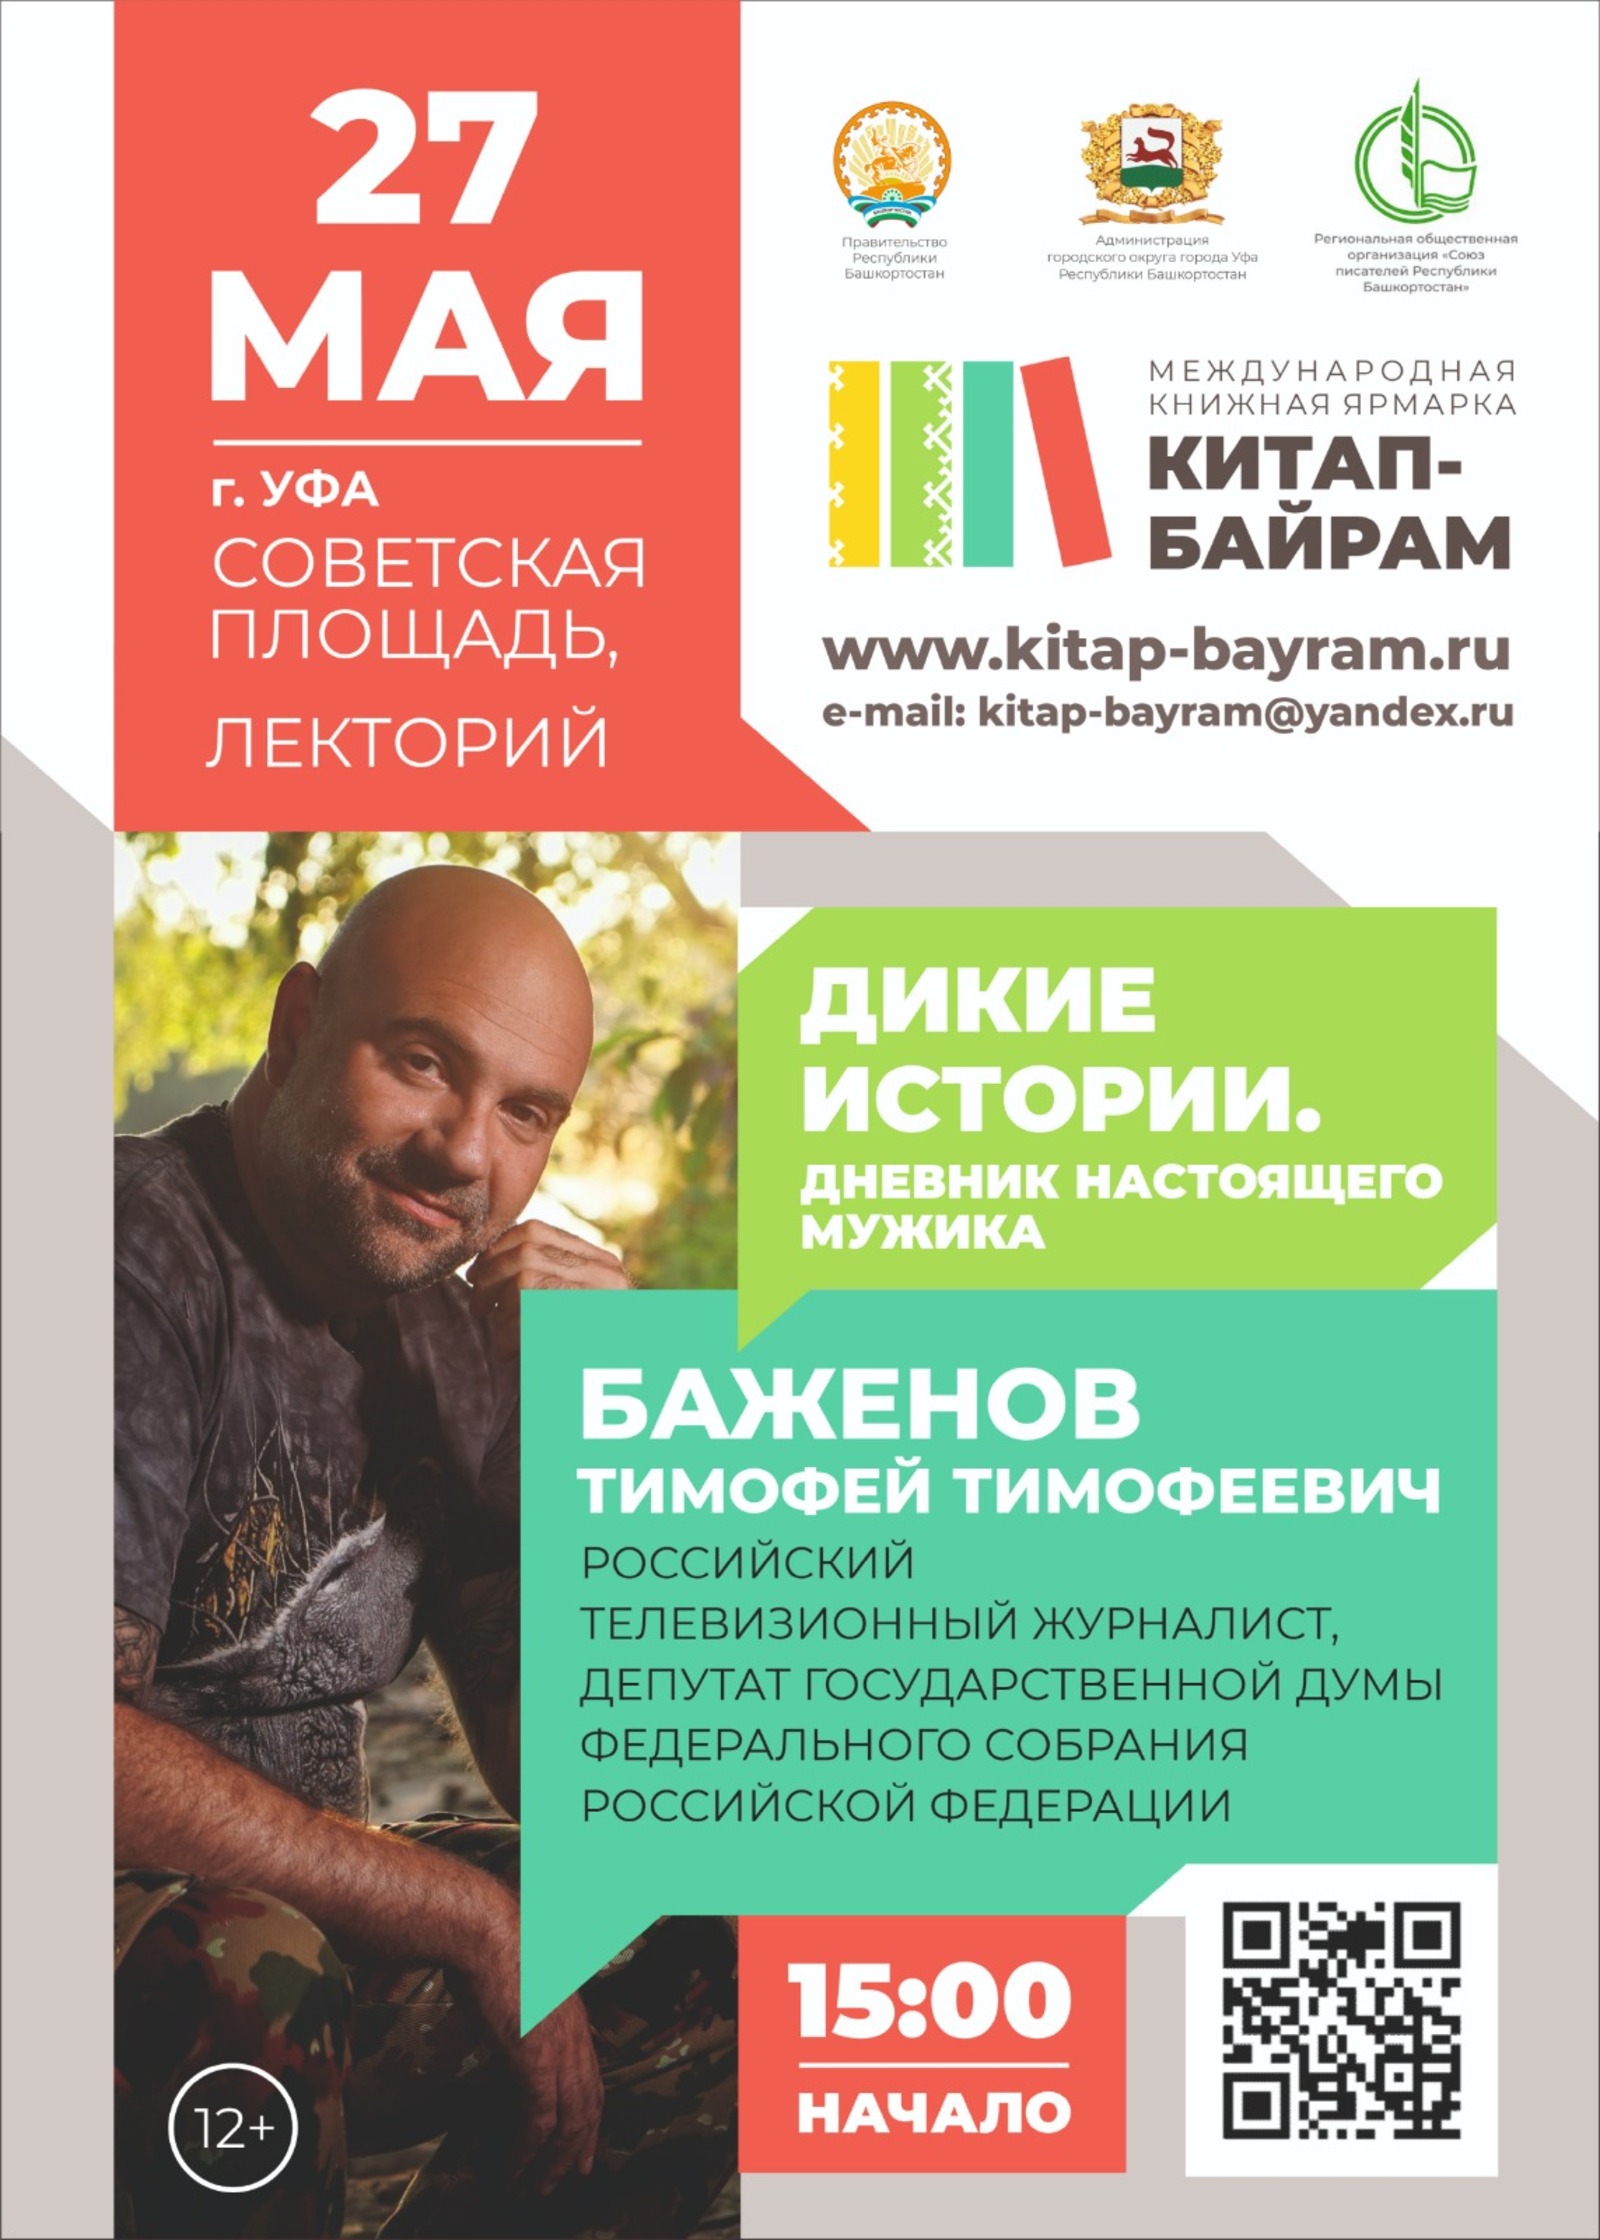 Уже через три дня в Башкирии состоится Международная книжная ярмарка «Китап-байрам»